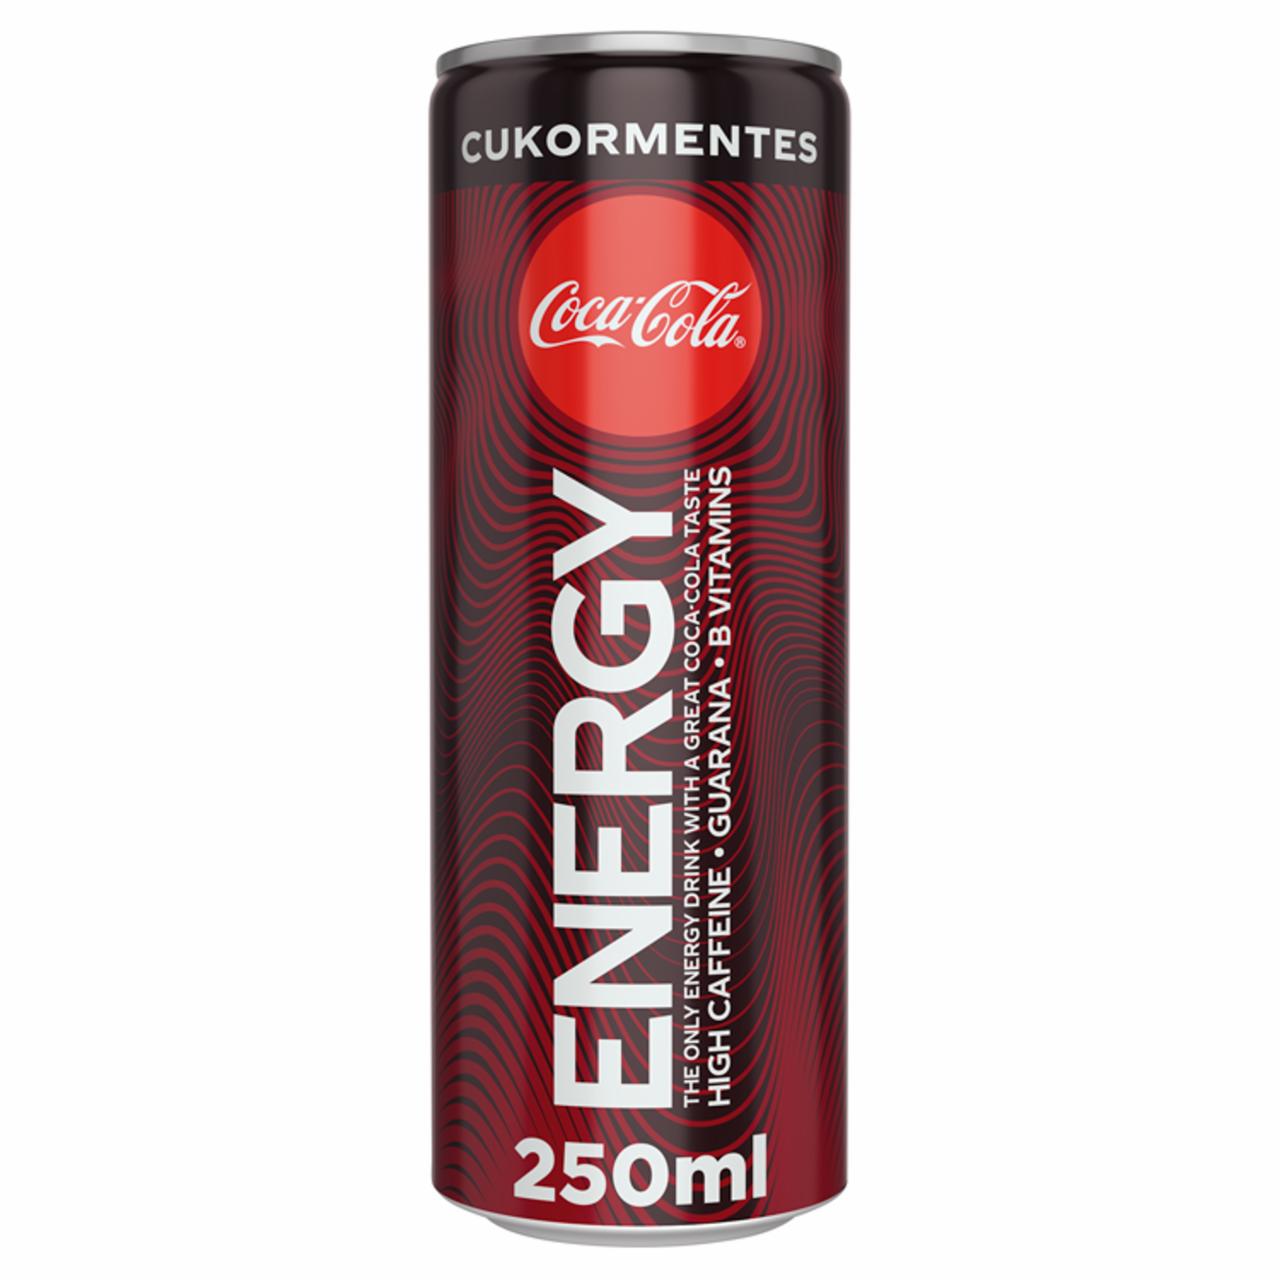 Képek - Coca-Cola Energy cukormentes ízesített szénsavas energiaital 250 ml